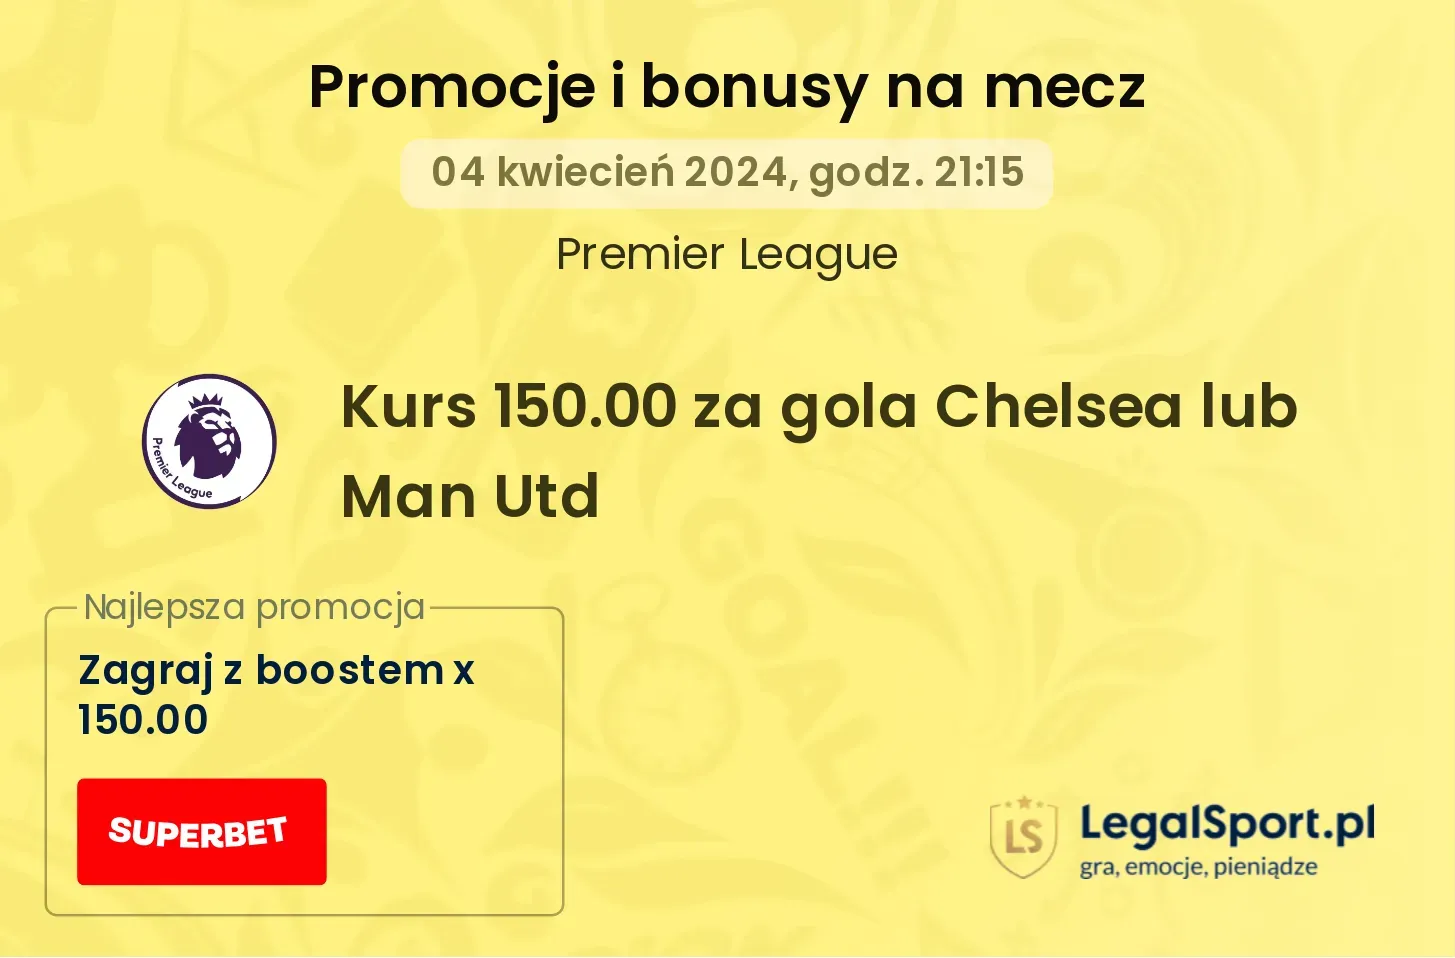 Kurs 150.00 za gola Chelsea lub Man Utd promocje bonusy na mecz